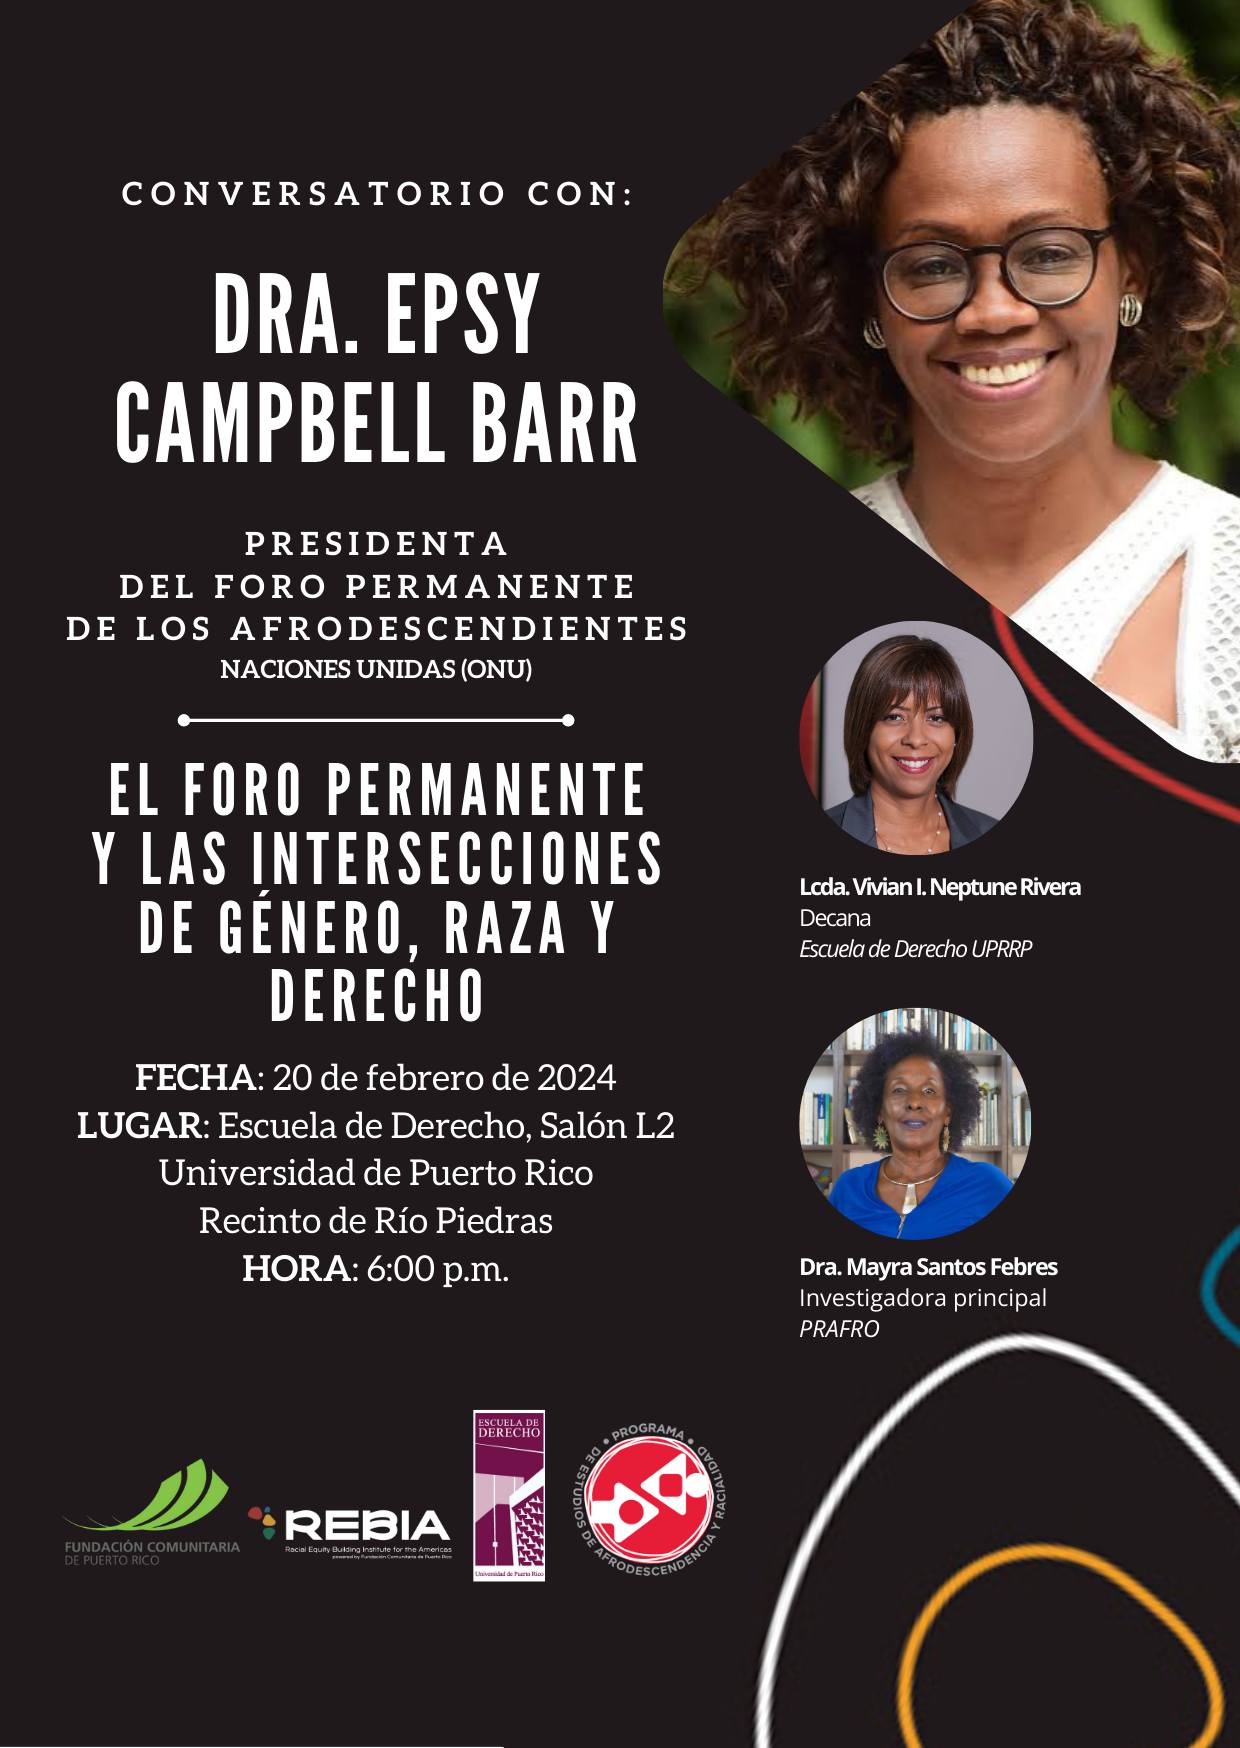 Converatorio con la Dra. Epsy Campbell, Exvicepresidenta de Costa Rica y actual Presidenta del Foro Permanente de los Afrodescendientes de la Organización de las Naciones Unidas (ONU).

20 de febrero de 2024 a las 6:00 pm en el Salón L-2